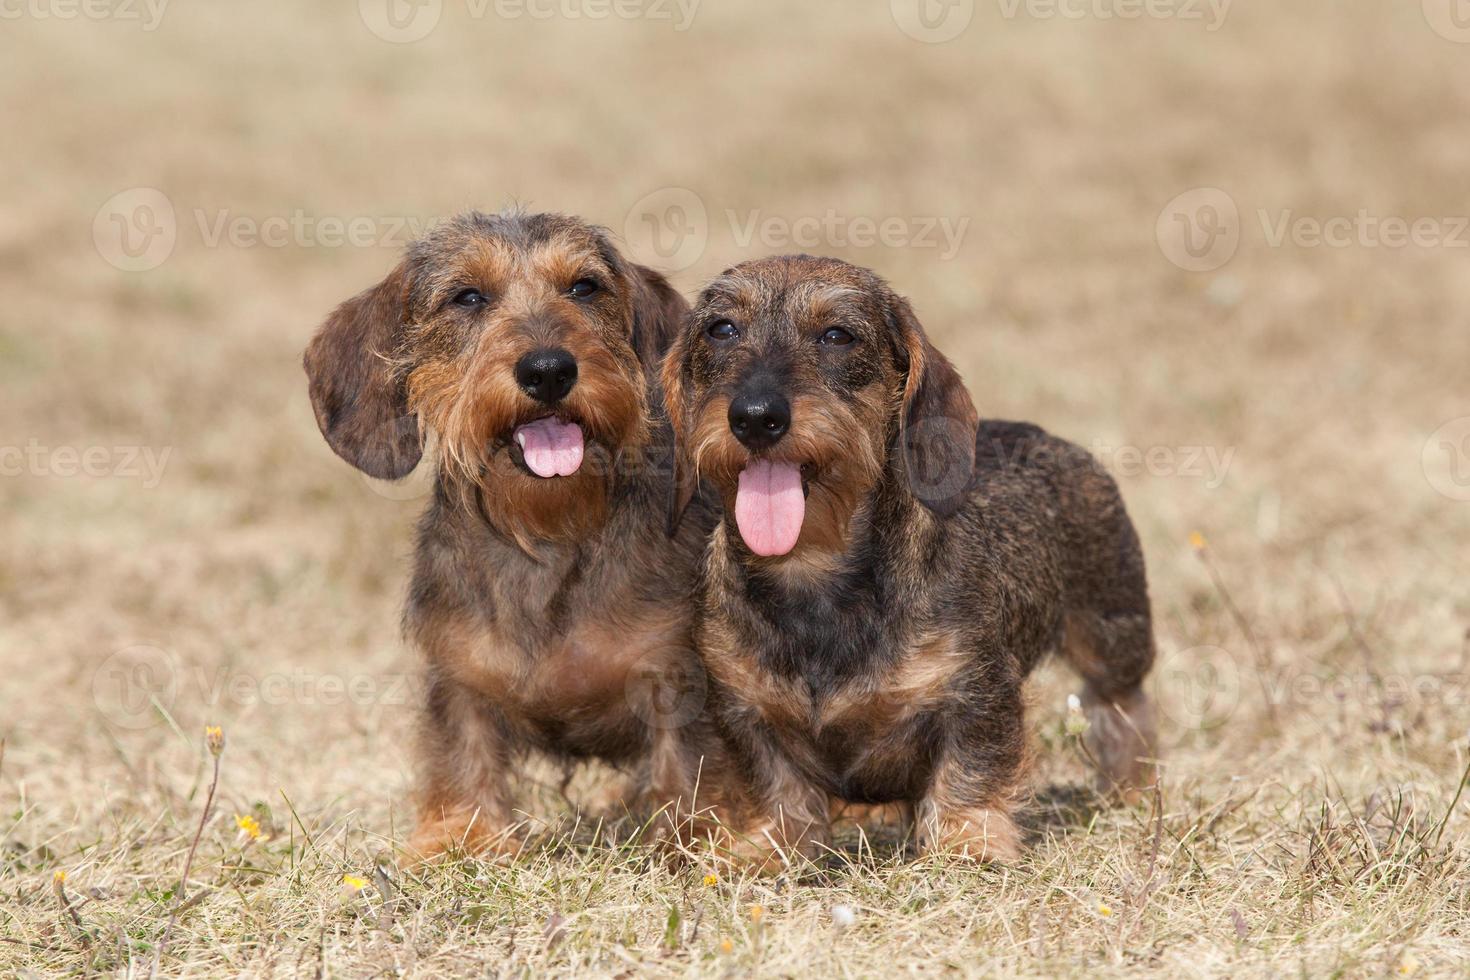 Regelmatig leeuwerik Stuwkracht portret van twee honden fokken ruwharige teckel 842660 stockfoto bij  Vecteezy